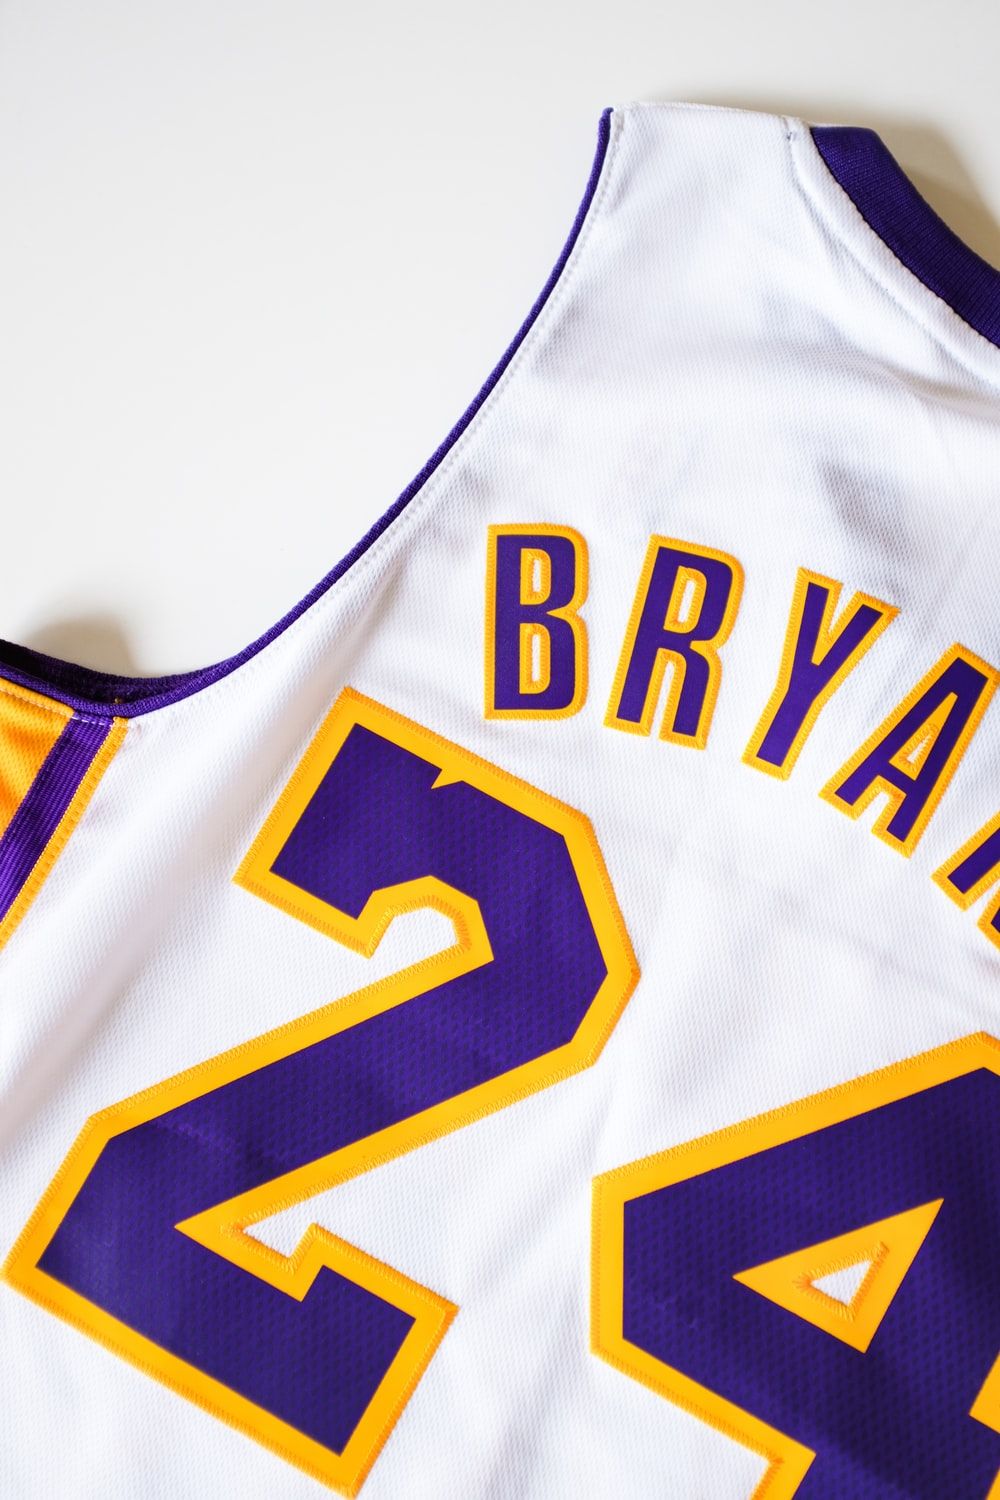 Kobe Bryant, Lakers NBA jersey photo